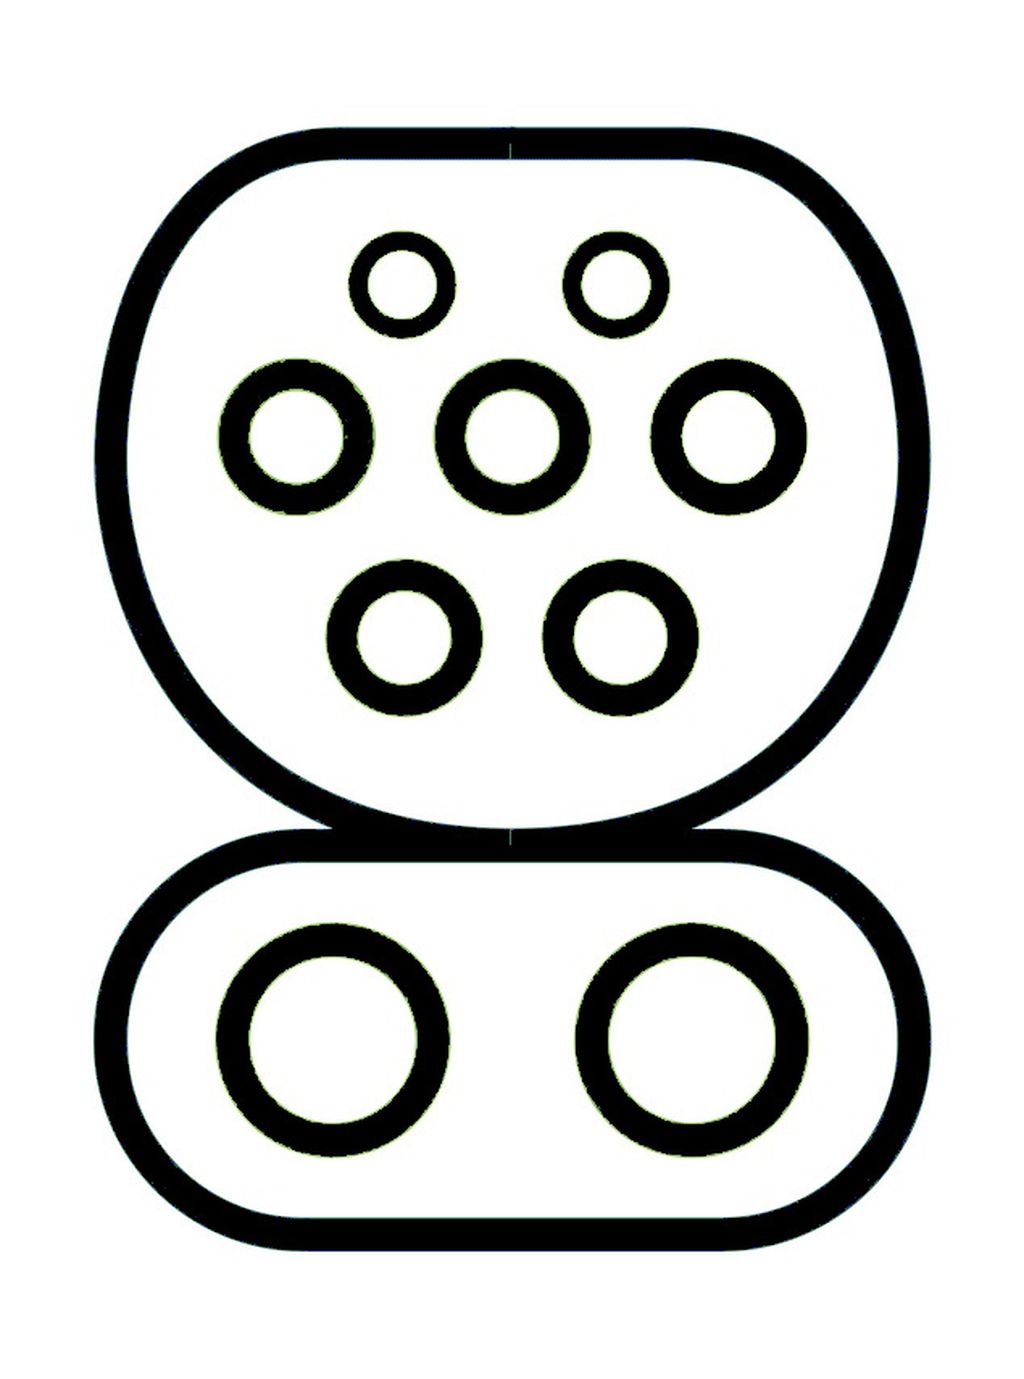 Symboles des bornes et des connecteurs